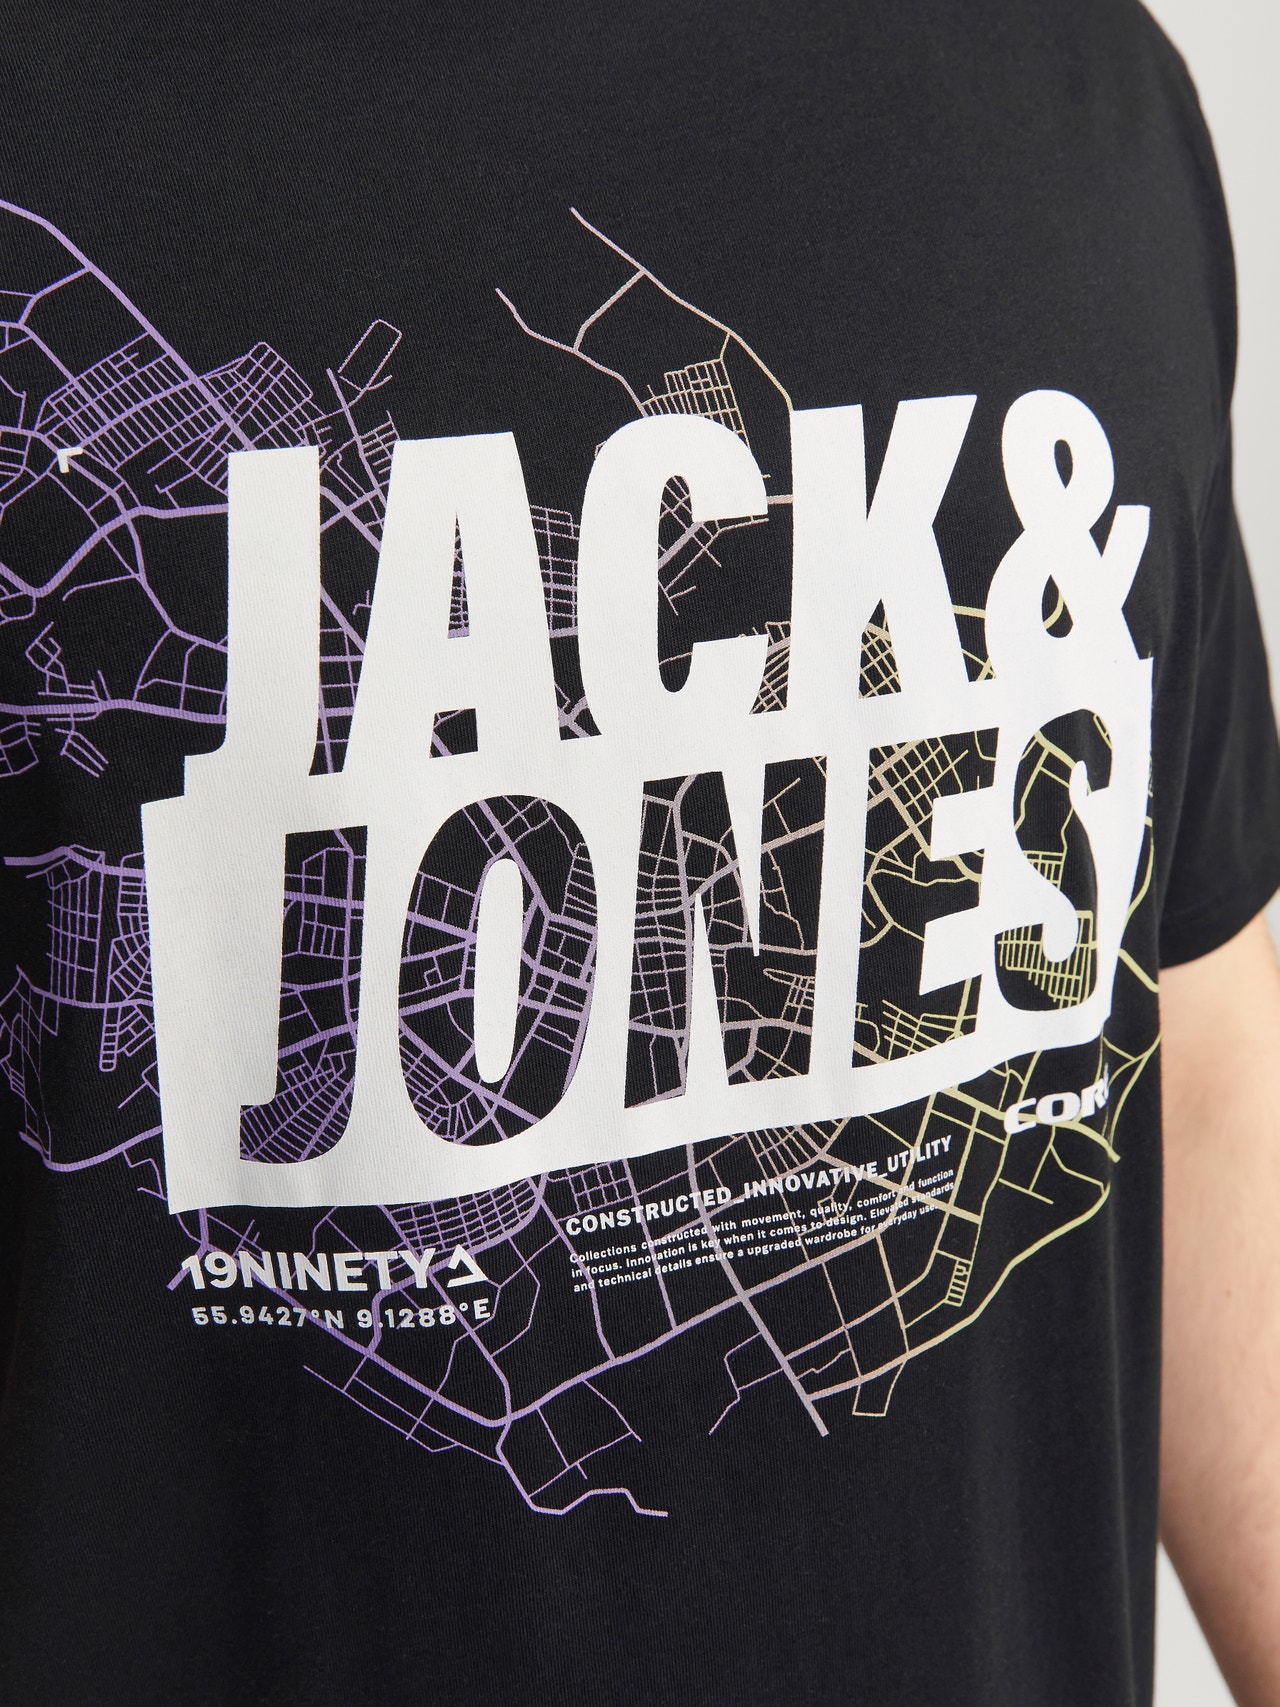 Jack & Jones Plus Size T-shirt Estampar -Black - 12257364